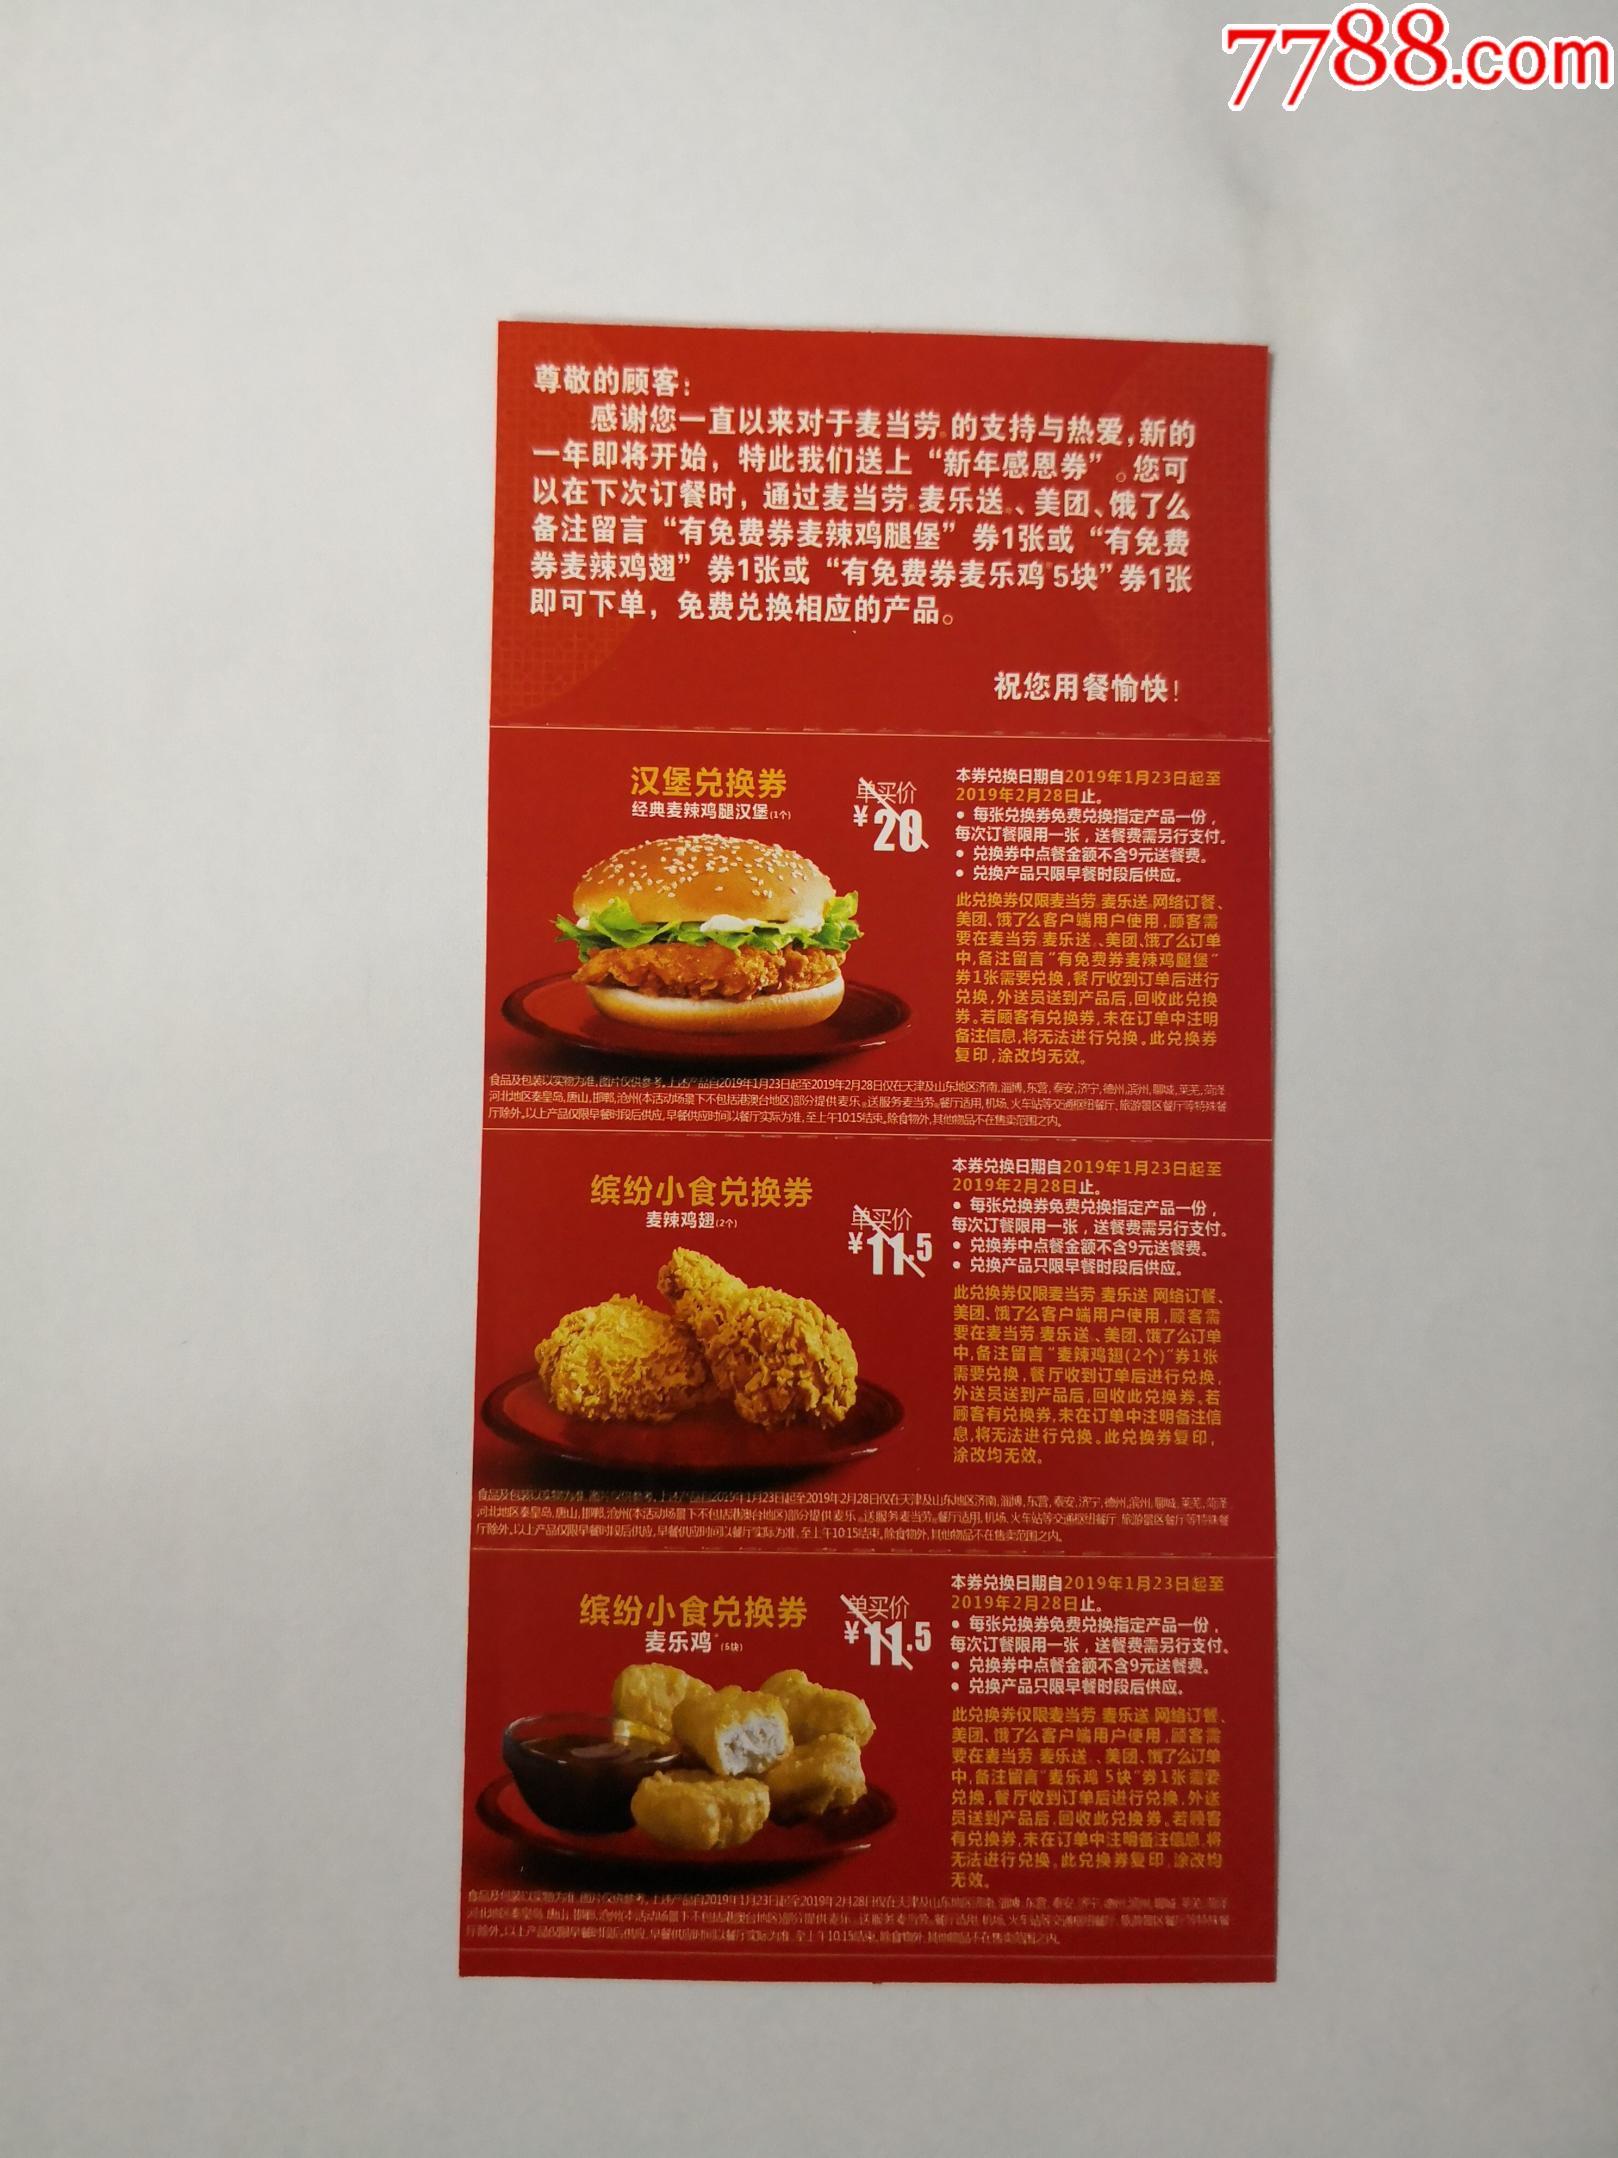 饿了么麦当劳抵价券_麦当劳优惠电子券怎么用_上海麦当劳优惠券